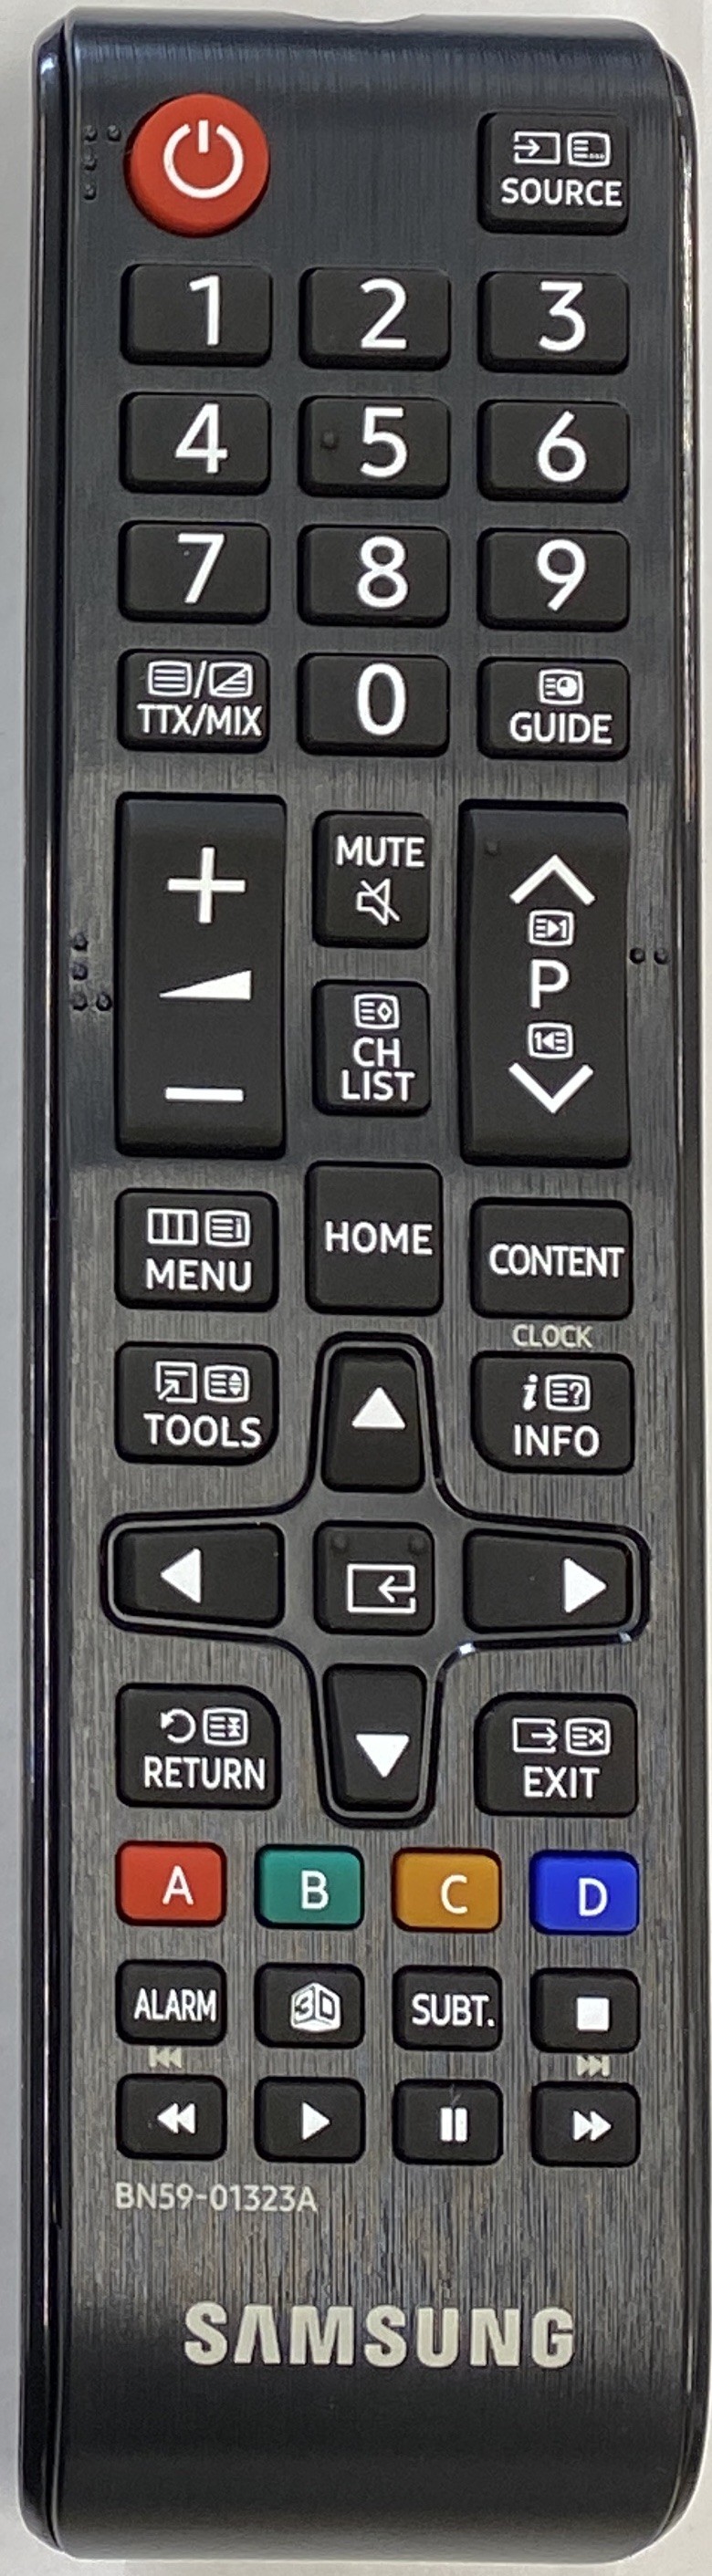 SAMSUNG BN59-01323A Remote Control Original